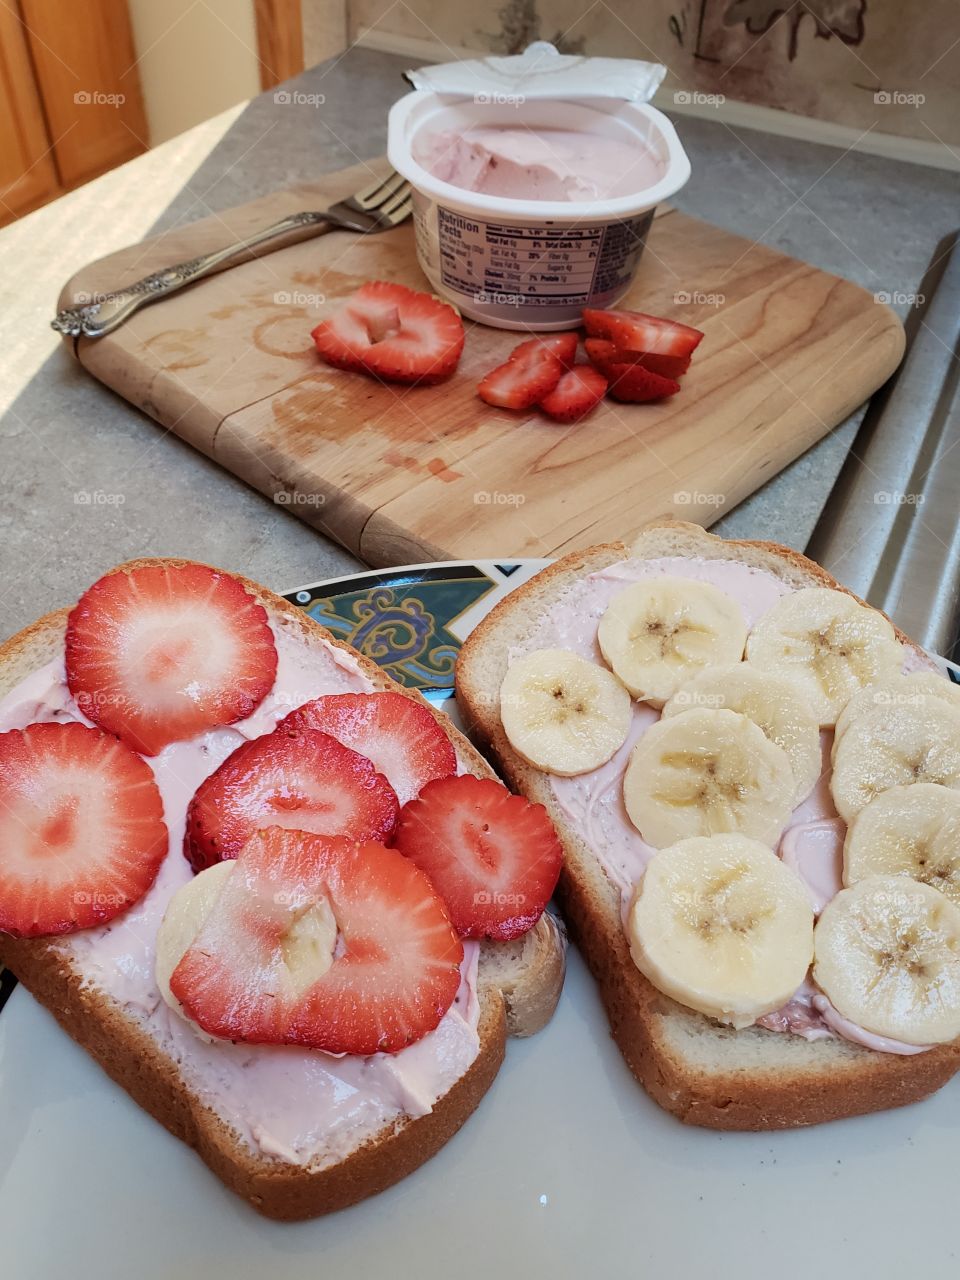 Strawberry cream cheese and banana sandwich yumminess